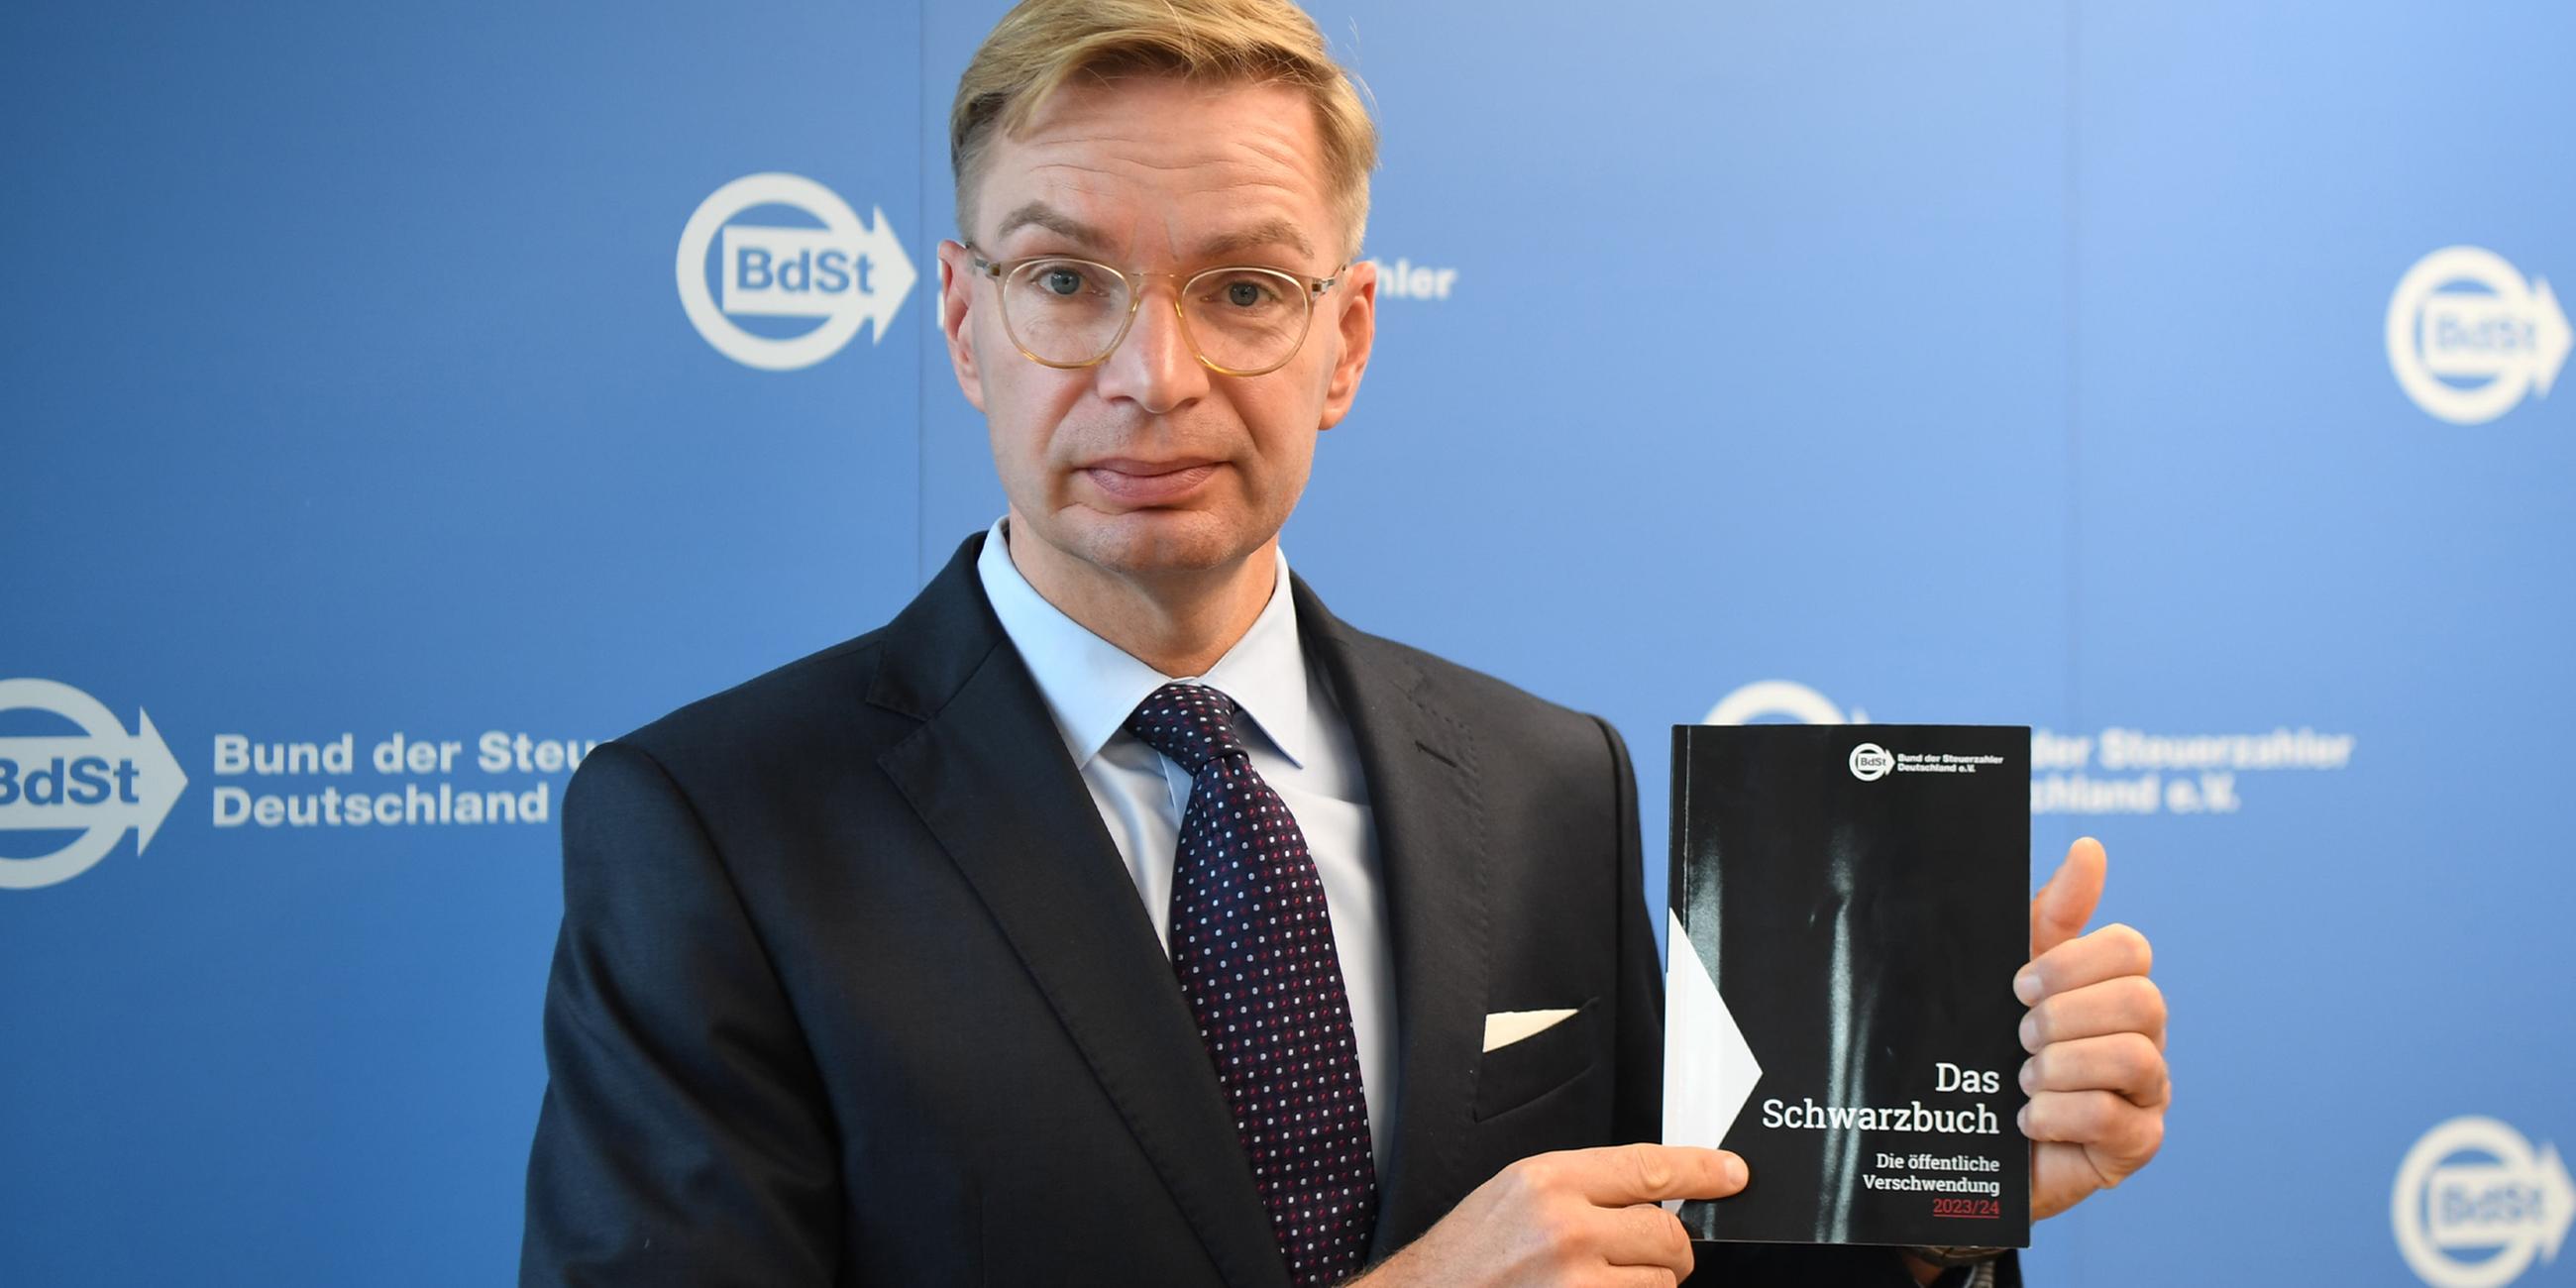 Reiner Holznagel präsentiert das 51. Schwarzbuch "Die öffentliche Verschwendung 2023/24" am 17.10.2023.